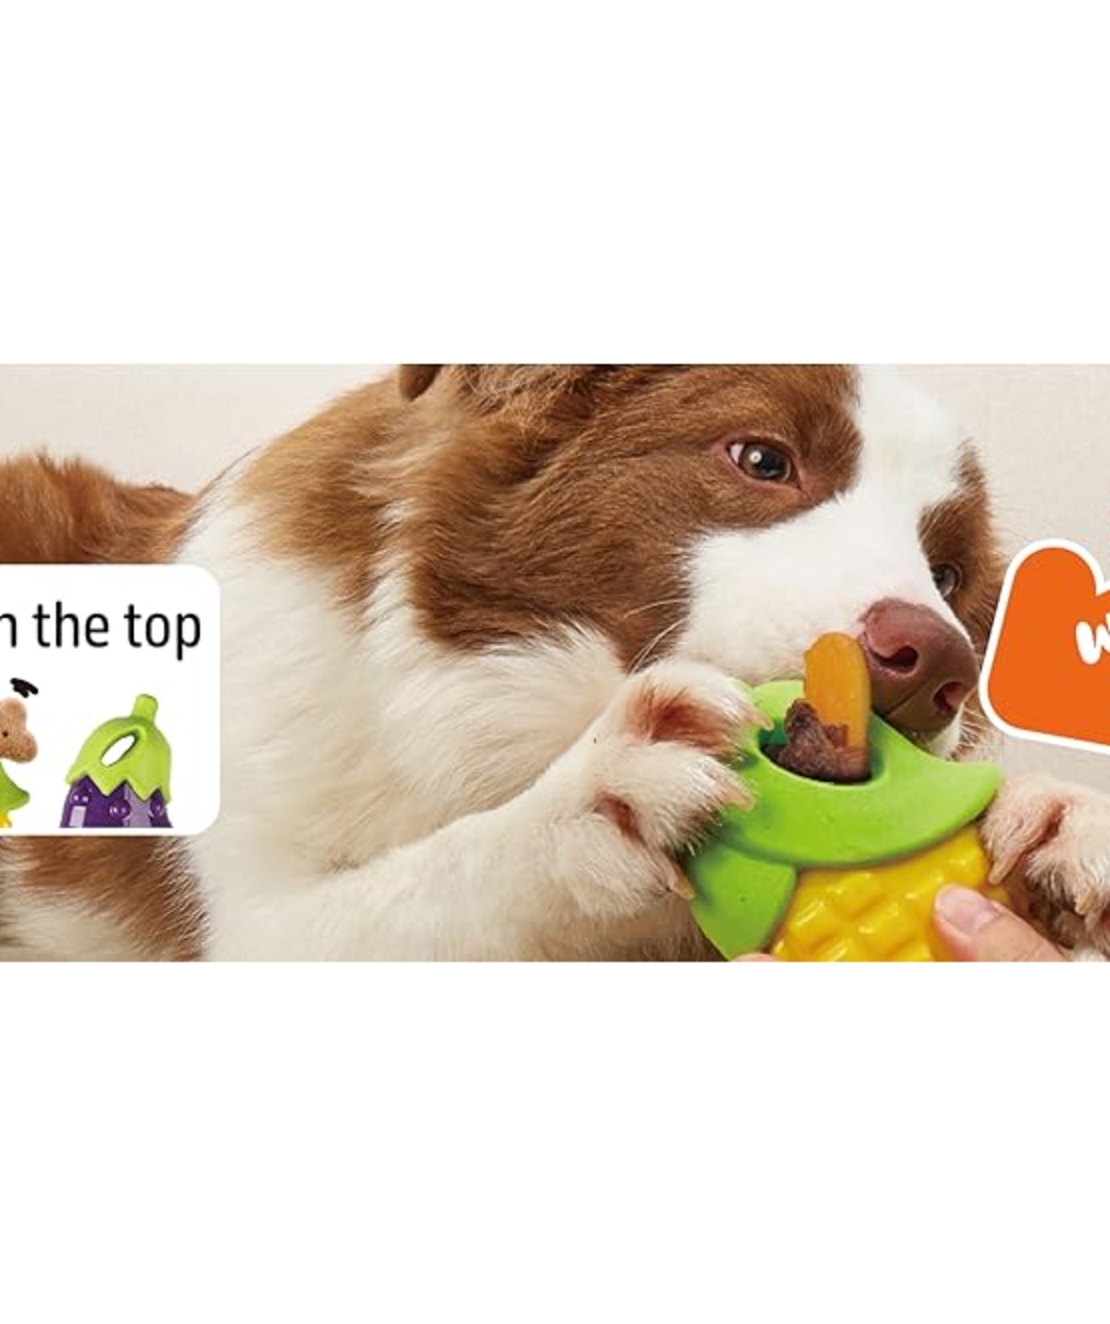 פופוס צעצוע תירס מצפצף לכלבים FOFOS